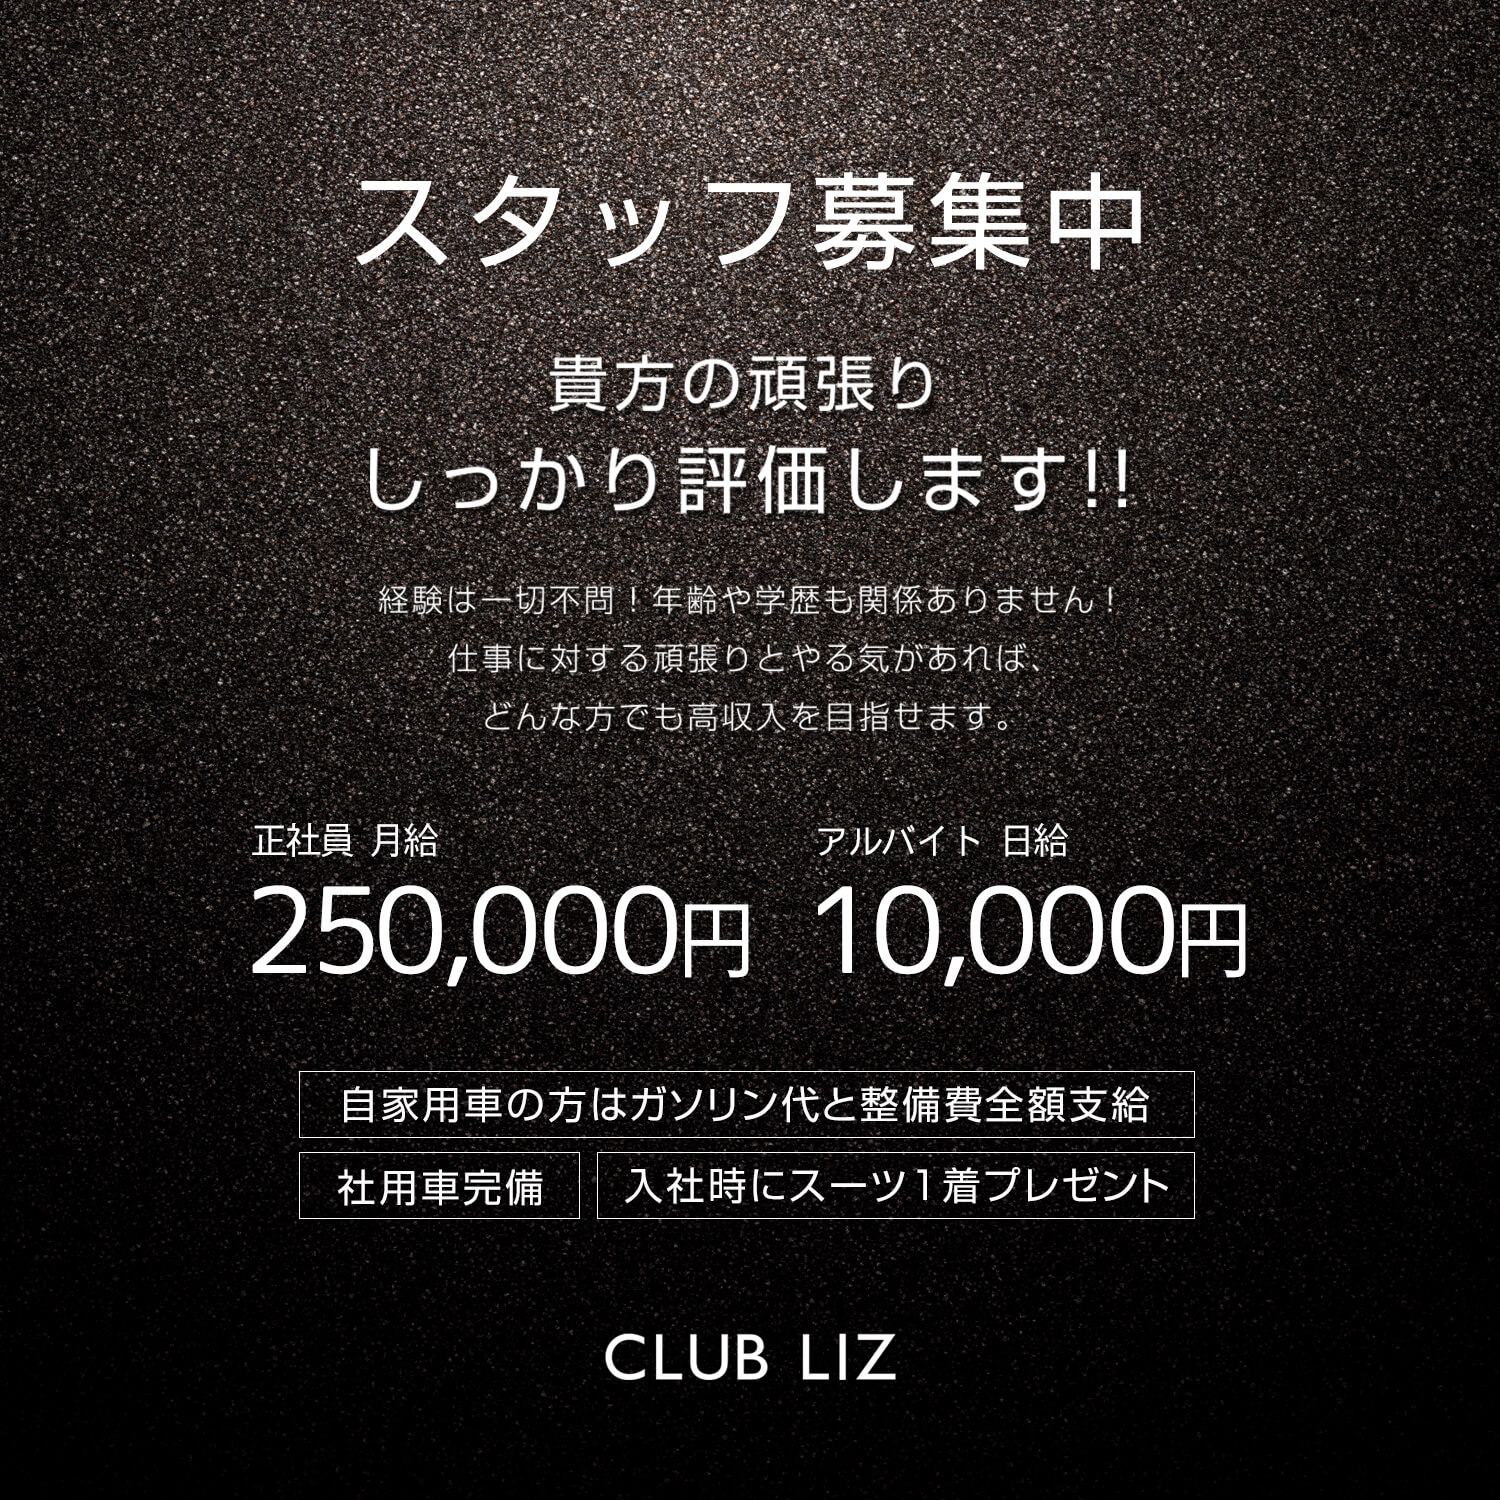 高崎キャバクラ「CLUB LIZ」ショップニュース